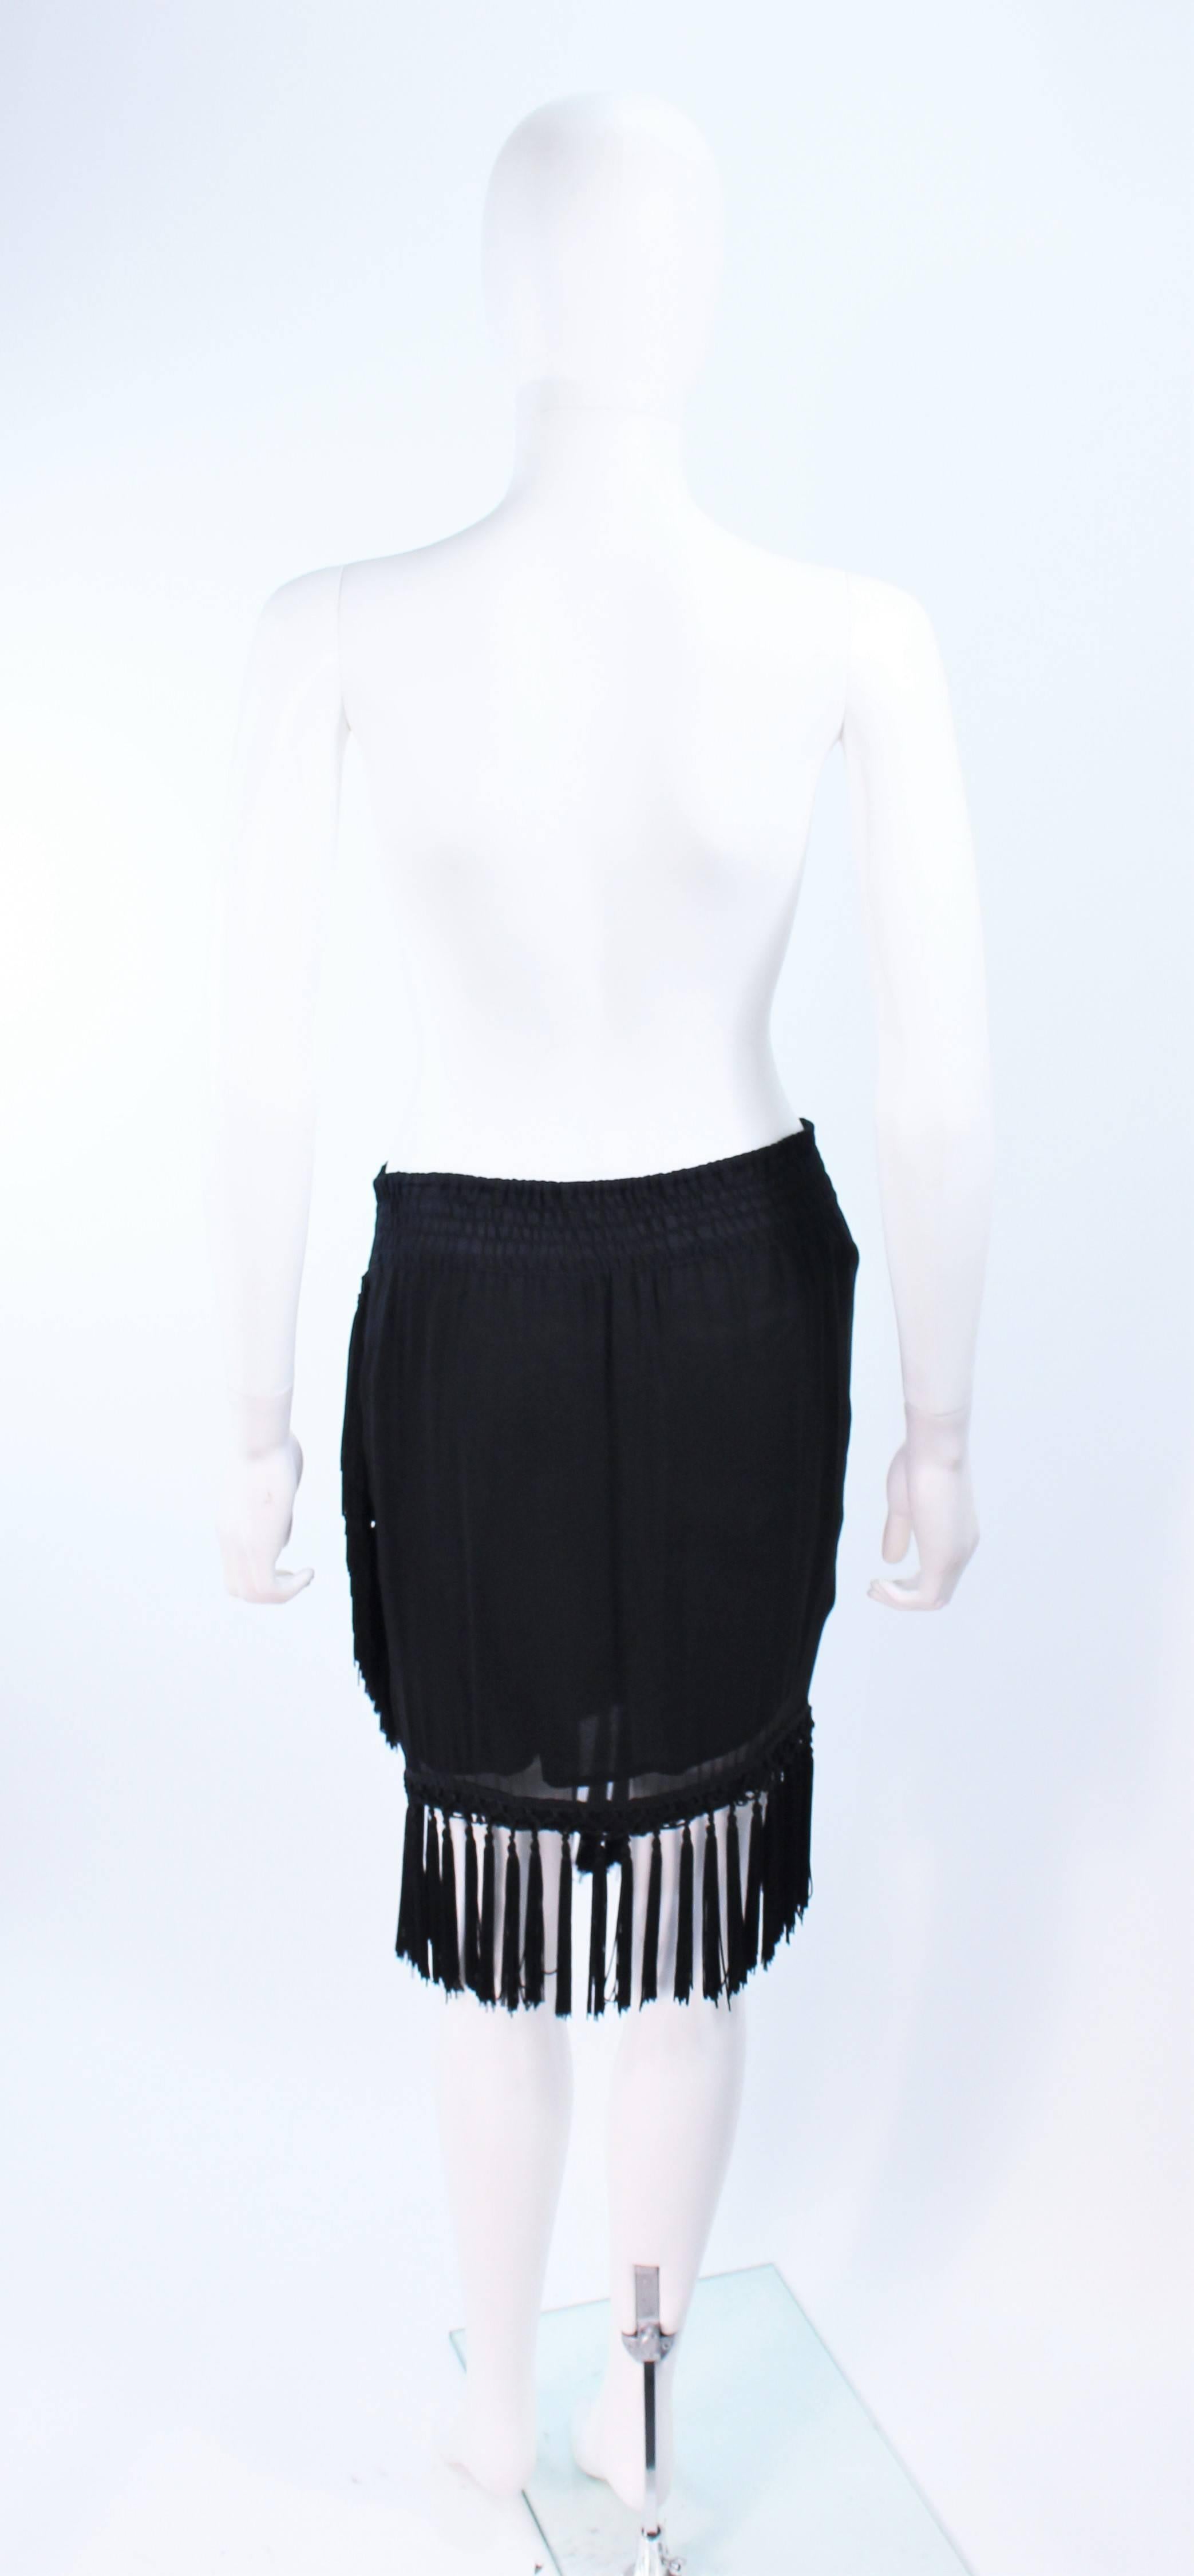 DIANE FREZ Black Chiffon Wrap Skirt with Tassels Size 4 6 For Sale 4